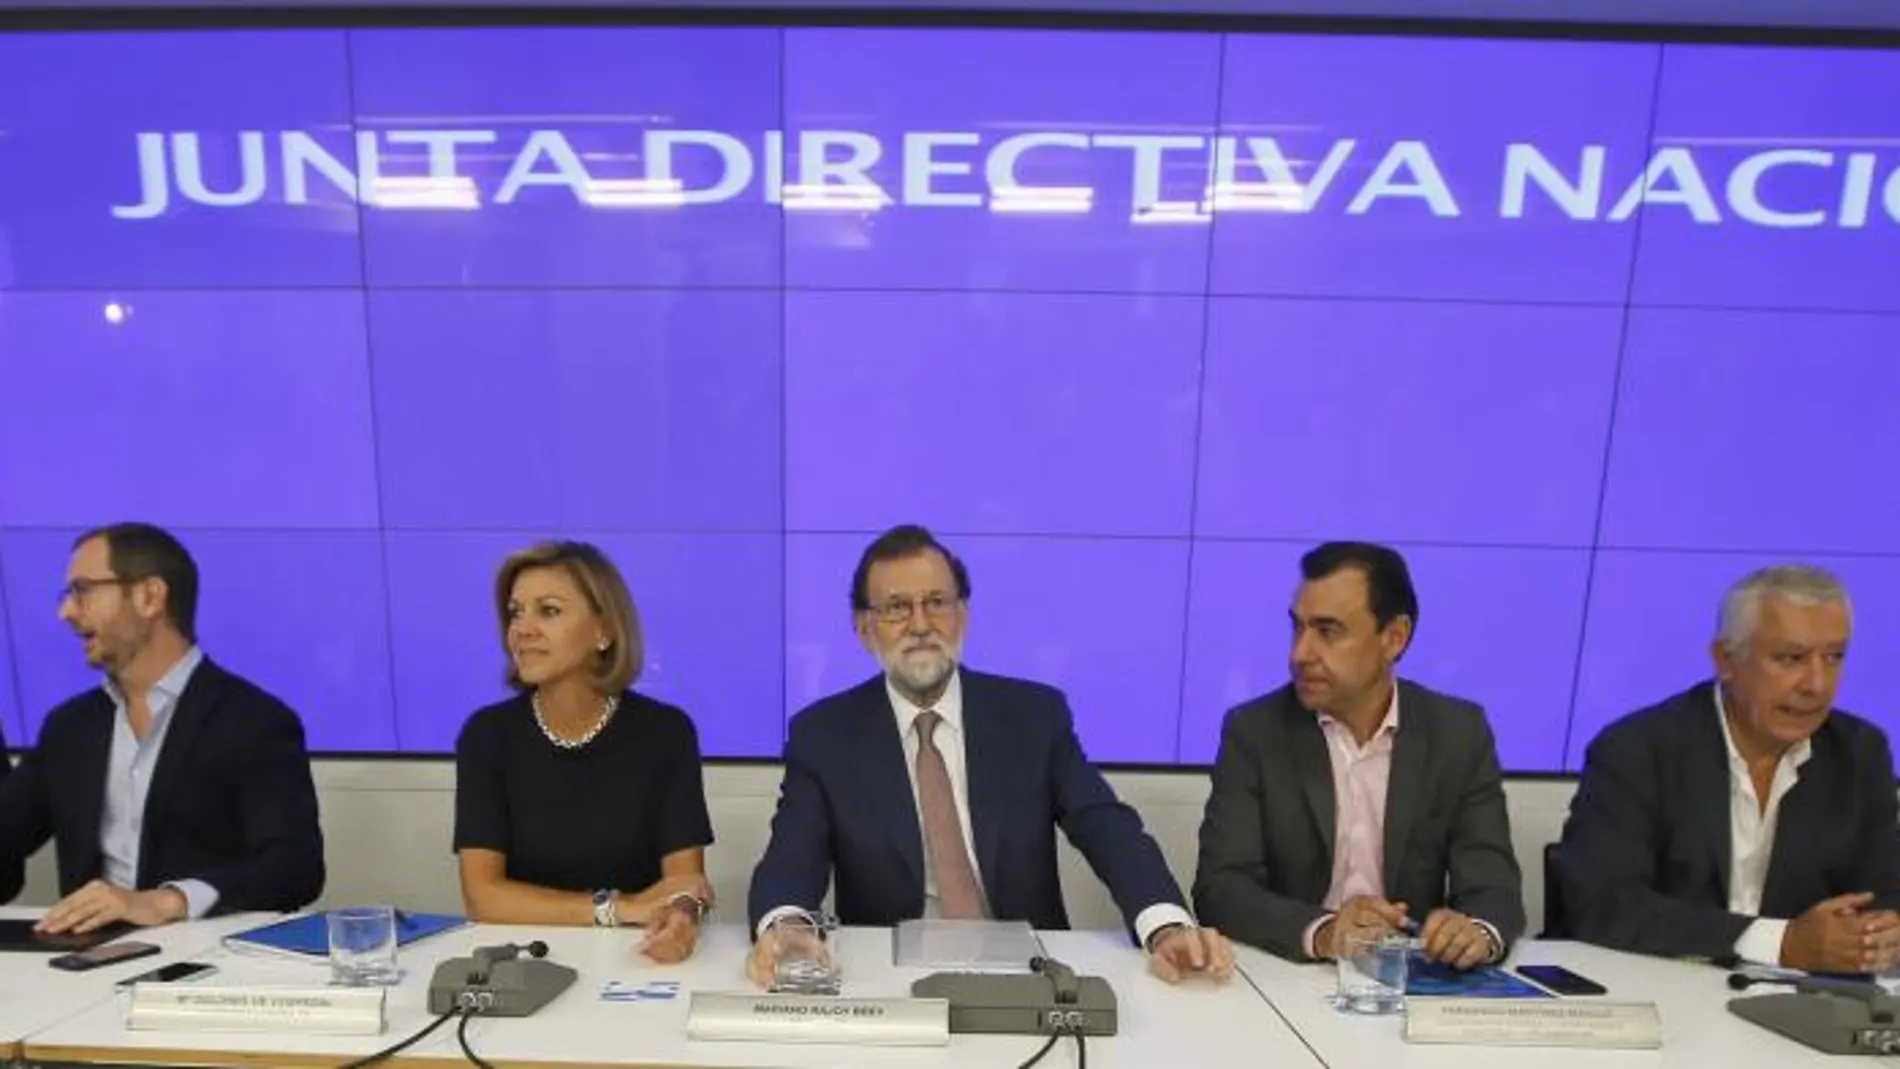 El presidente del Gobierno y del Partido Popular, Mariano Rajoy, preside la reunión hoy de la Junta Directiva Nacional del PP.